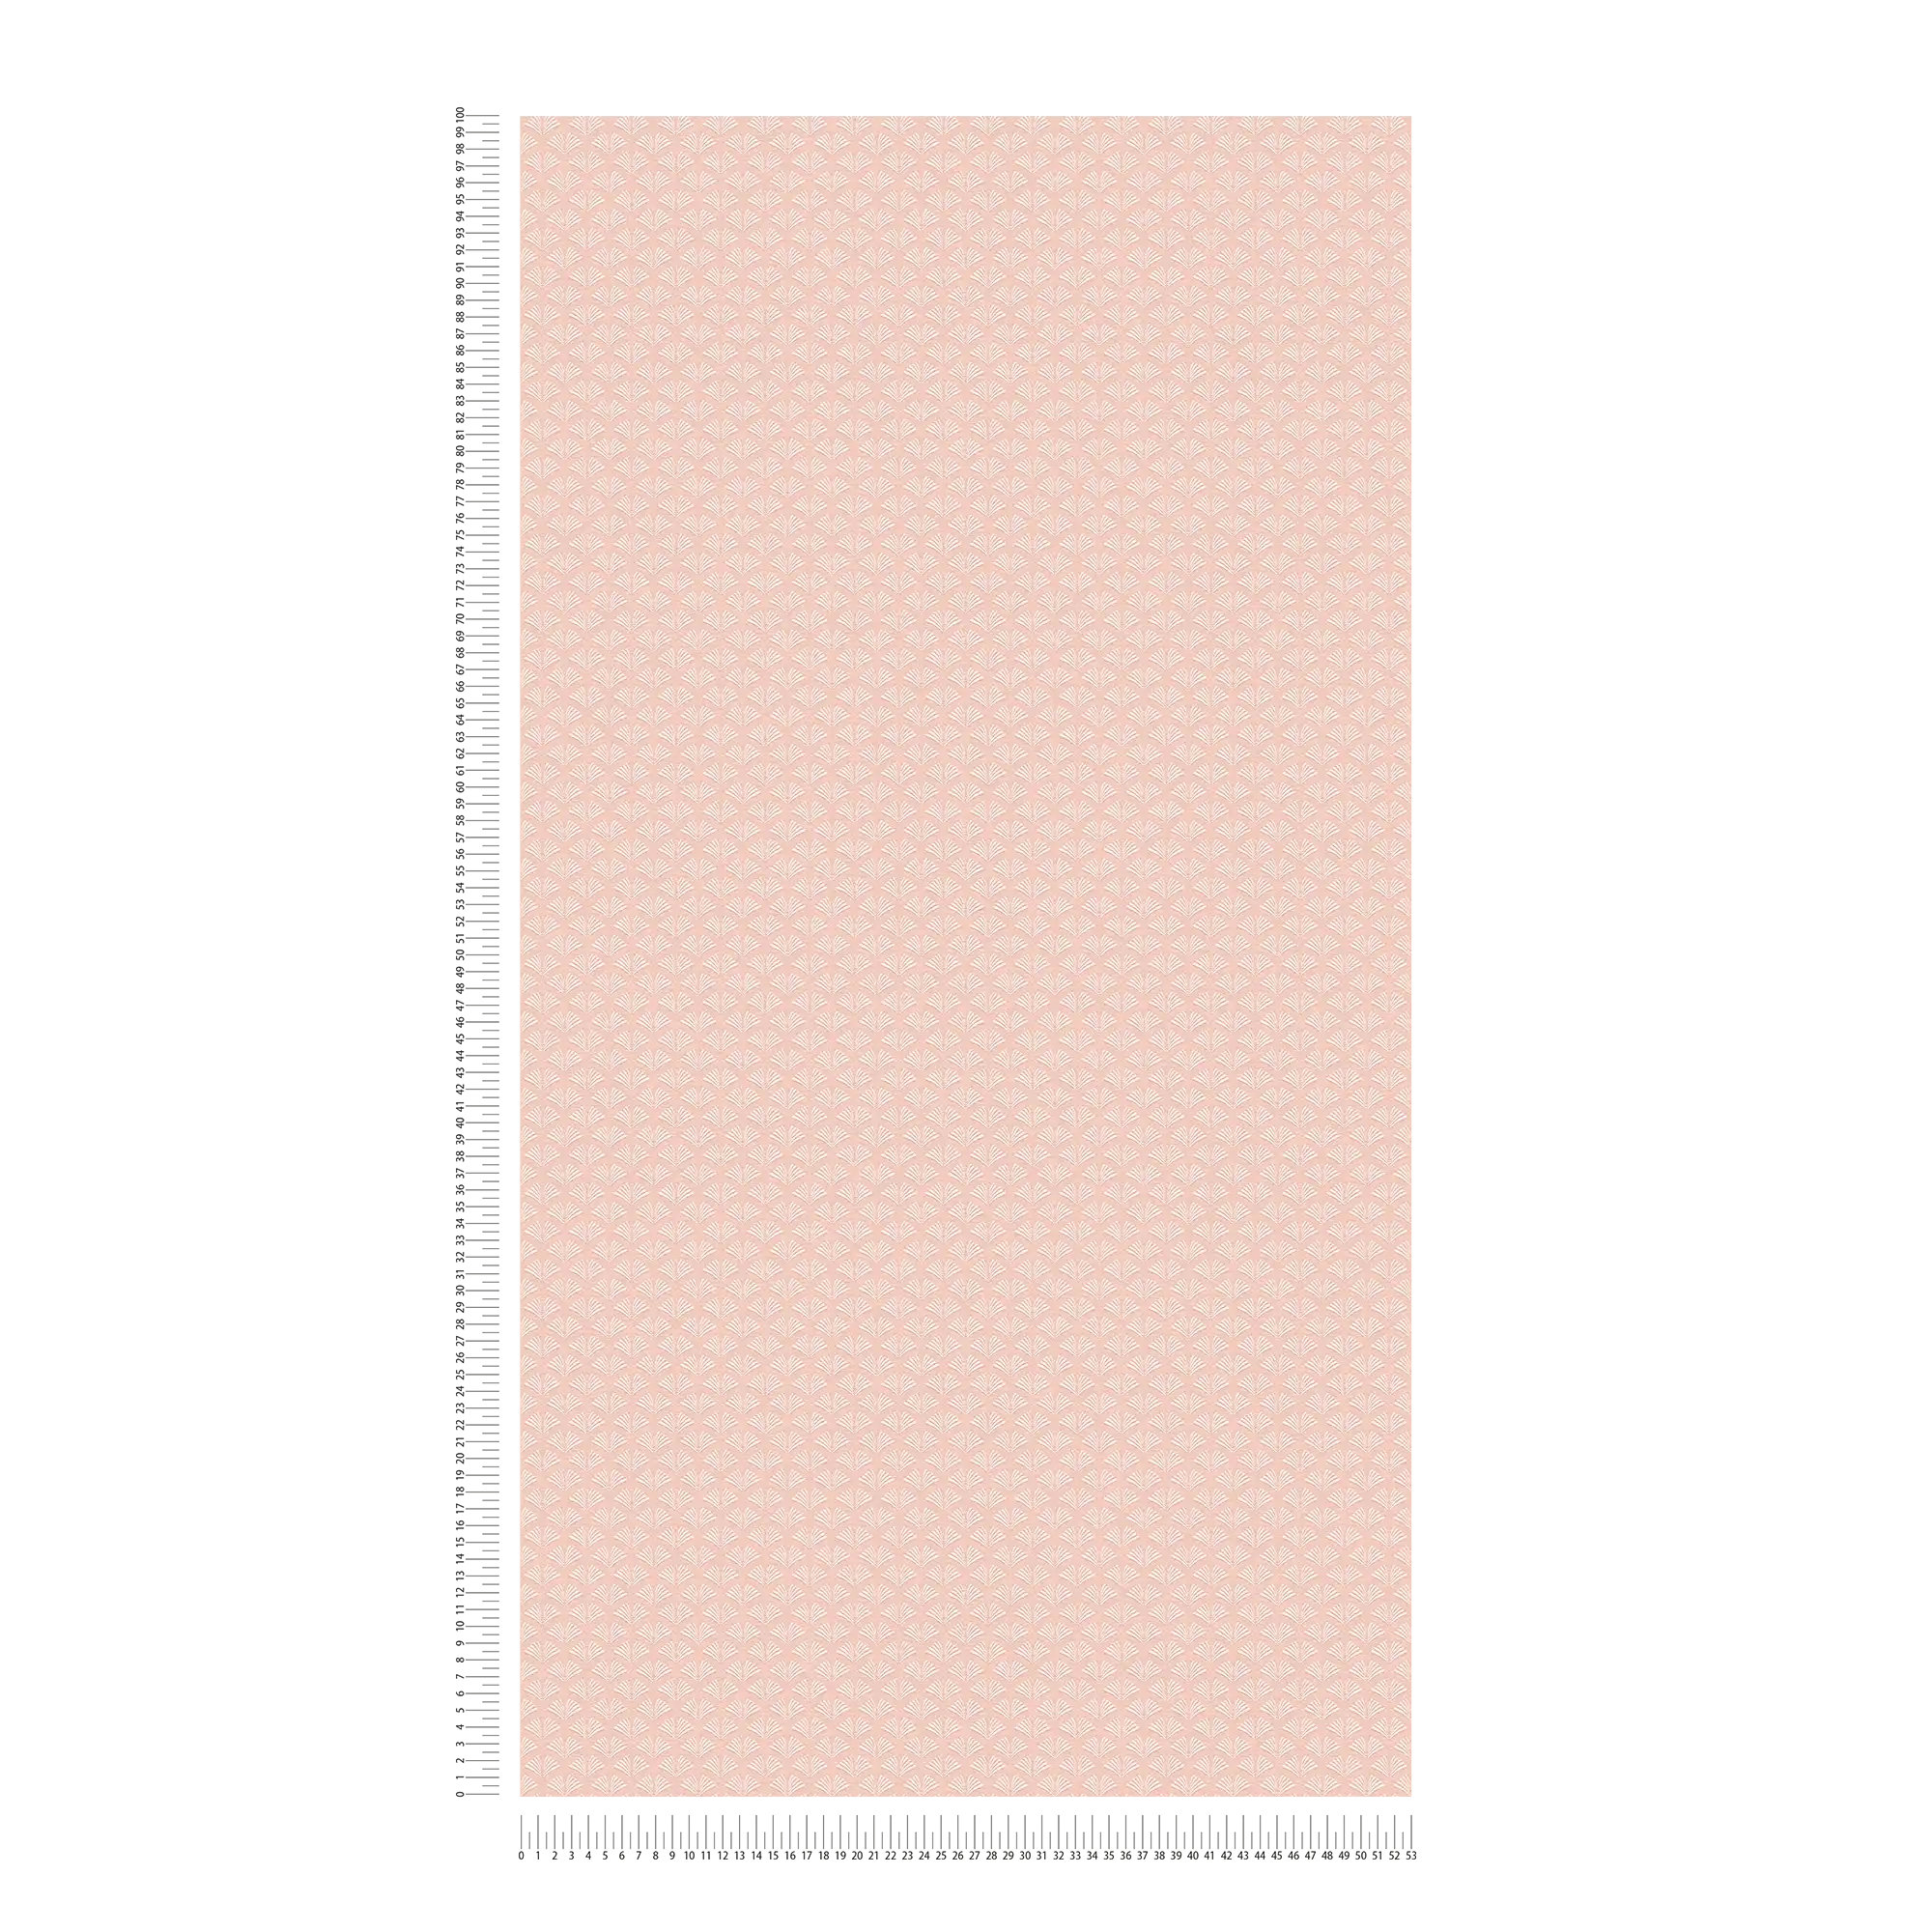             Carta da parati in tessuto non tessuto rosa con motivo a filigrana bianca dal look femminile
        